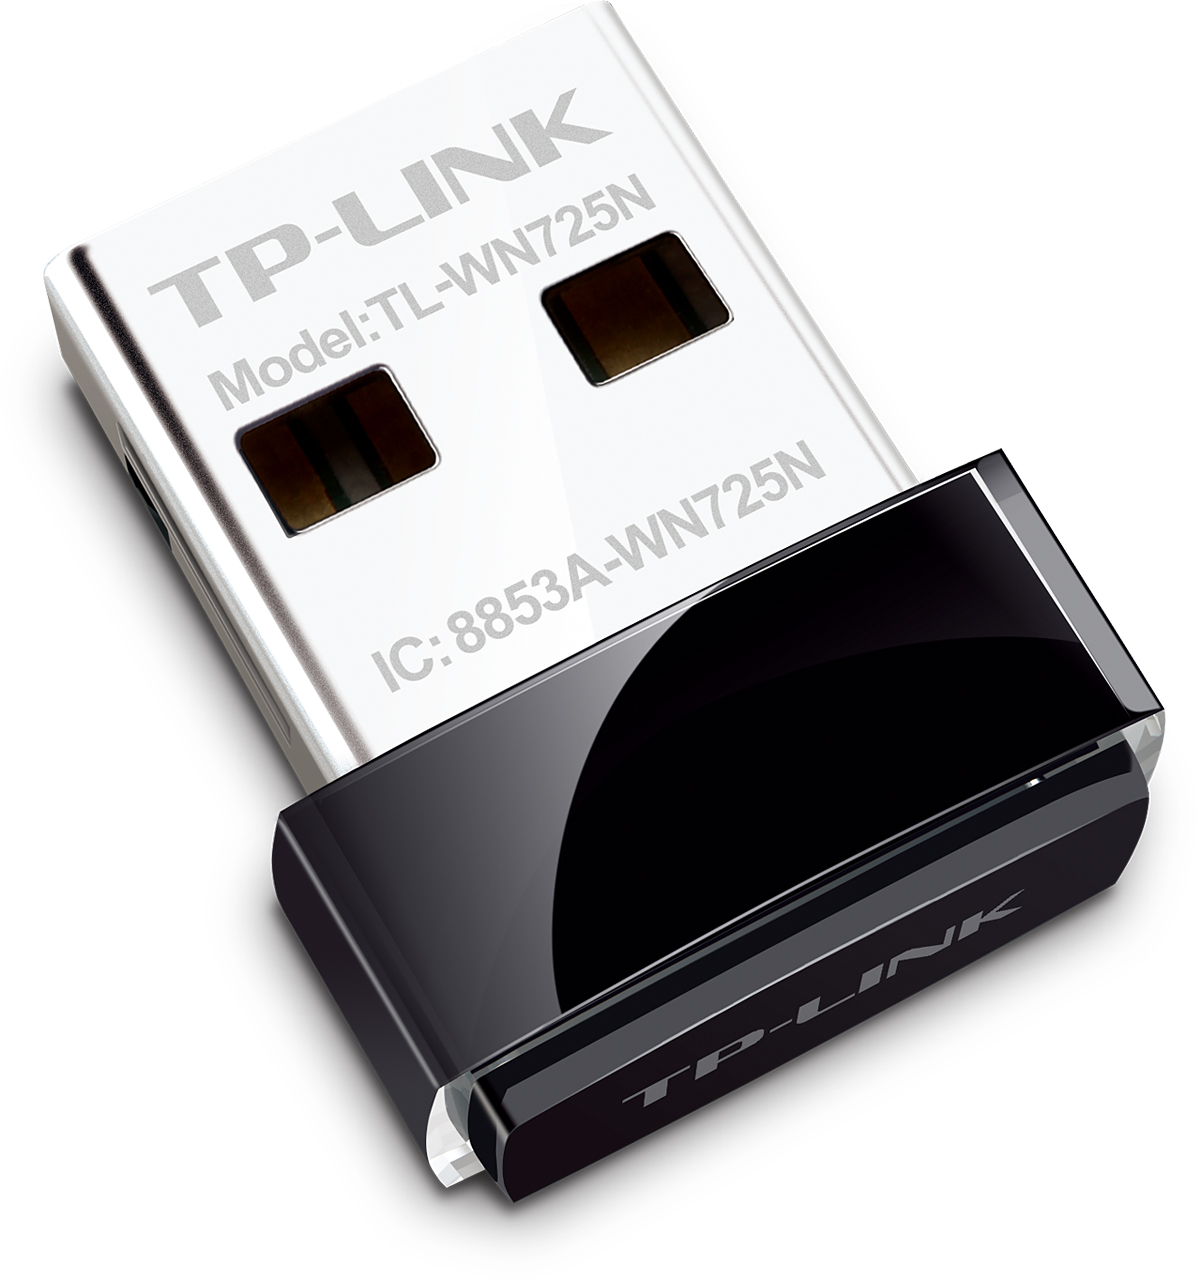 Мережева карта Wireless USB Wi-Fi TP-Link TL-WN725N - зображення 1